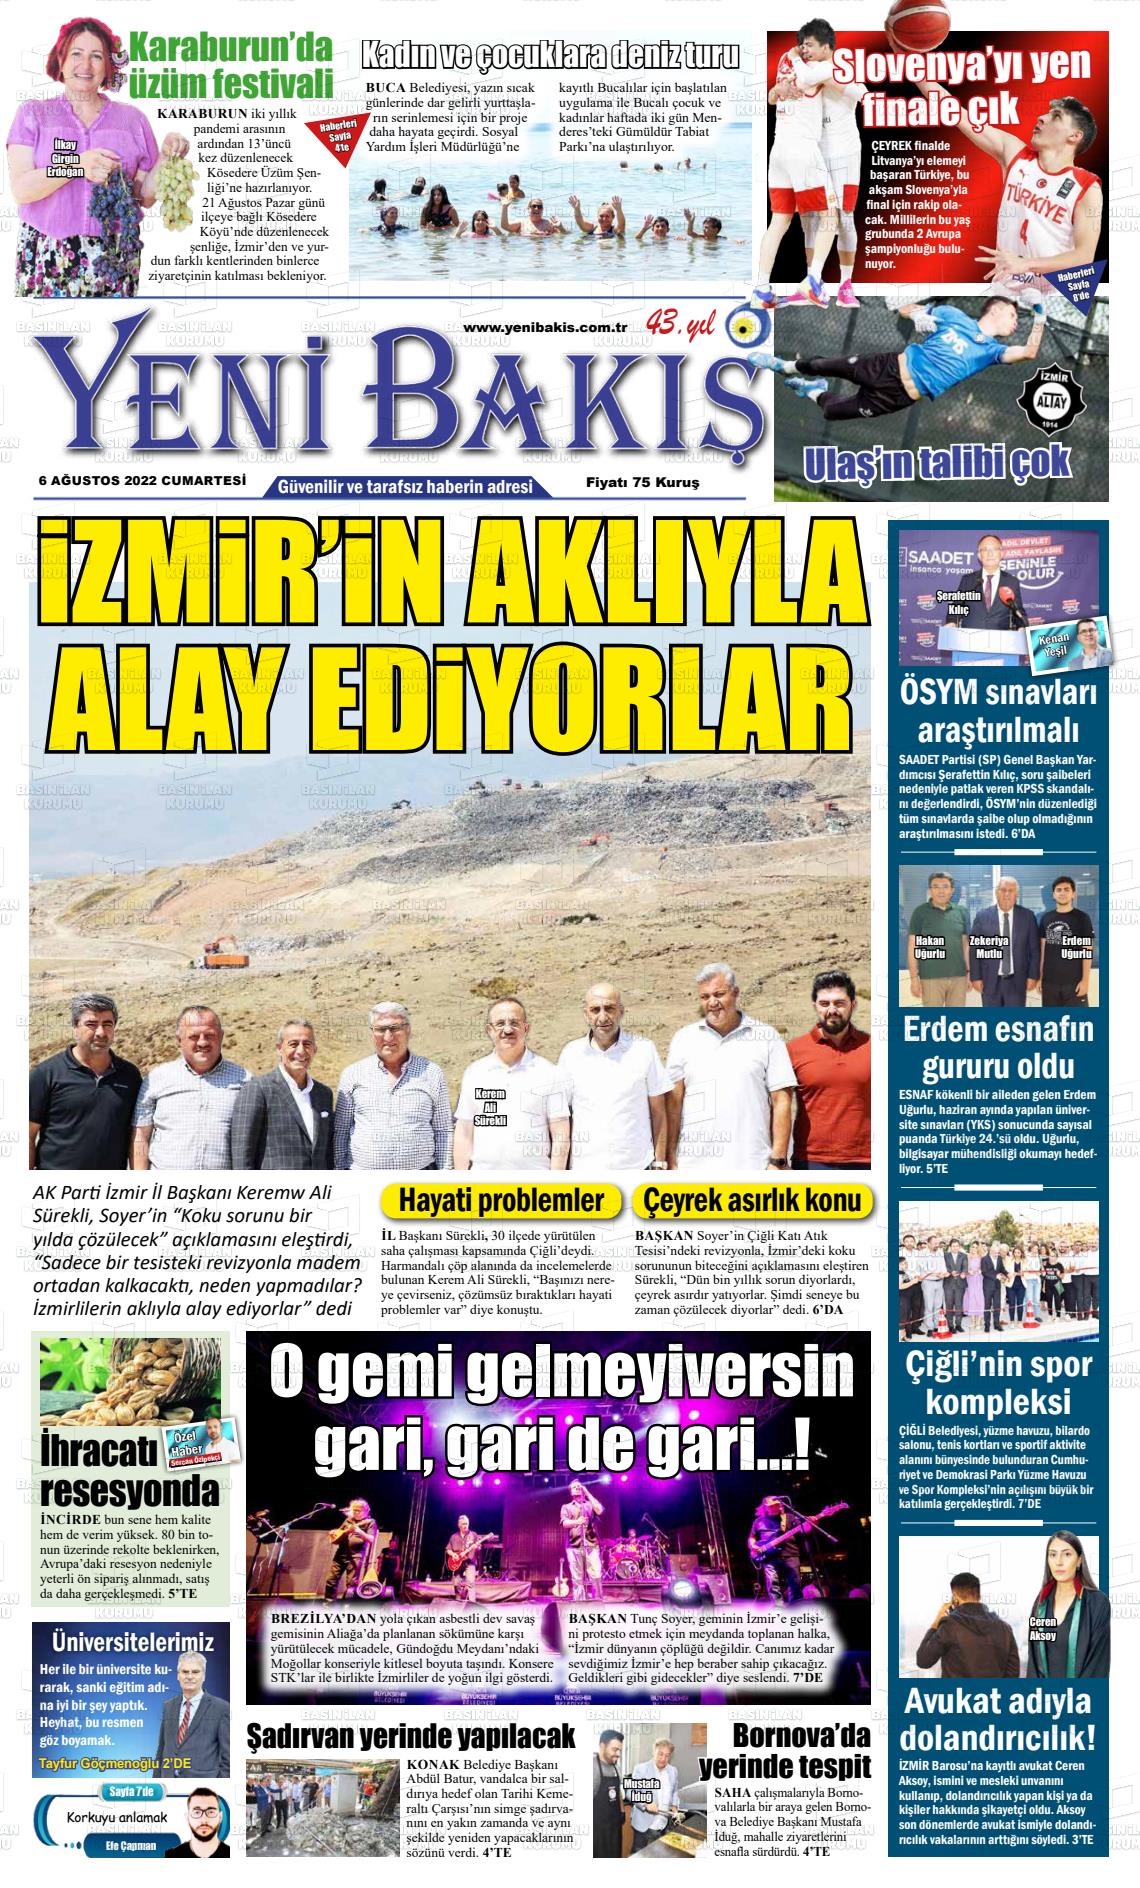 06 Ağustos 2022 Yeni Bakış Gazete Manşeti